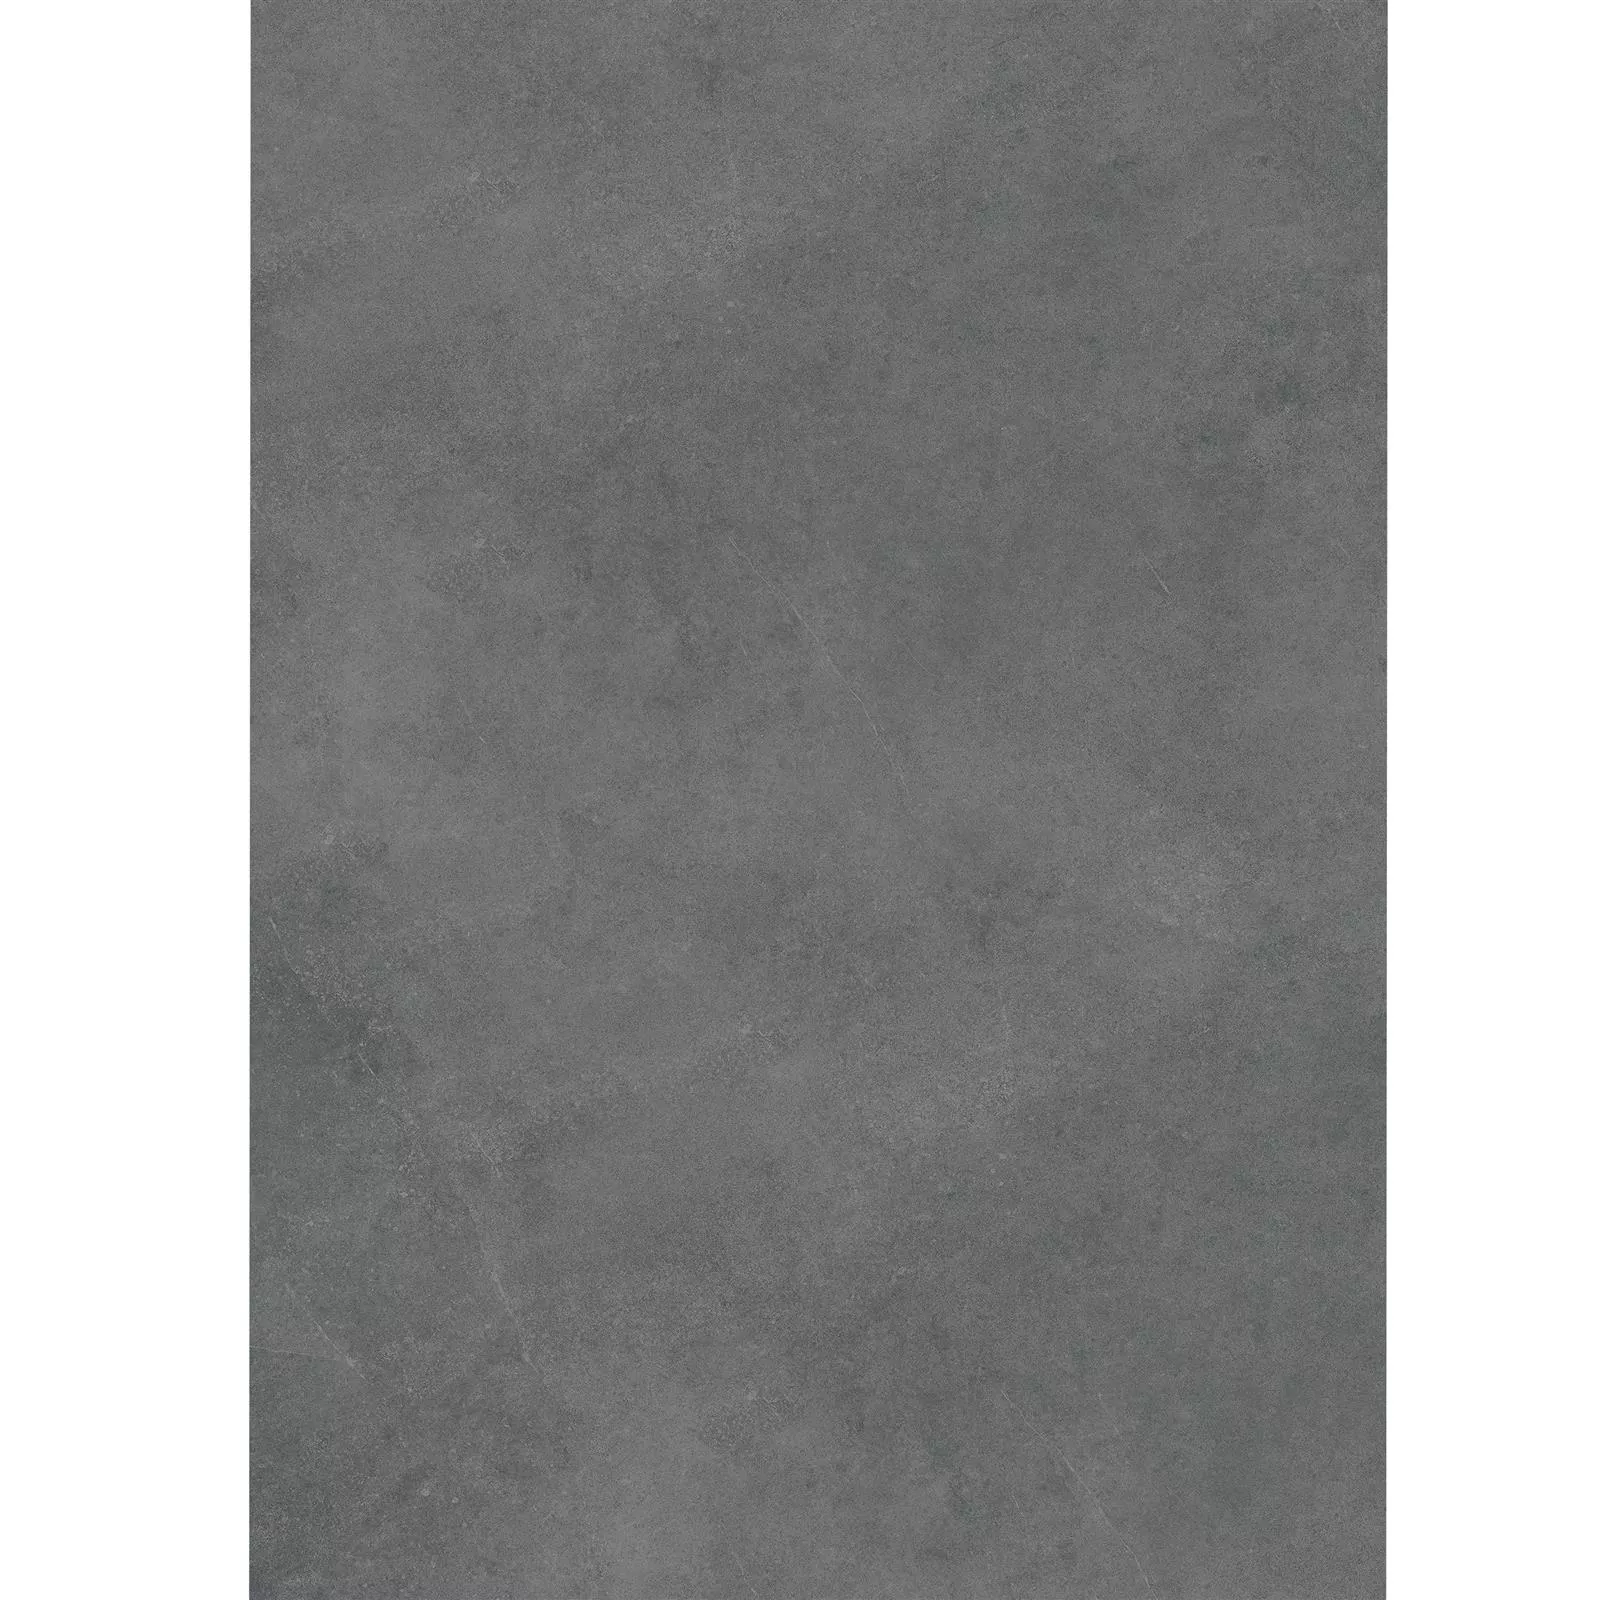 Dalles De Terrasse Optique De Ciment Glinde Anthracite 60x120cm